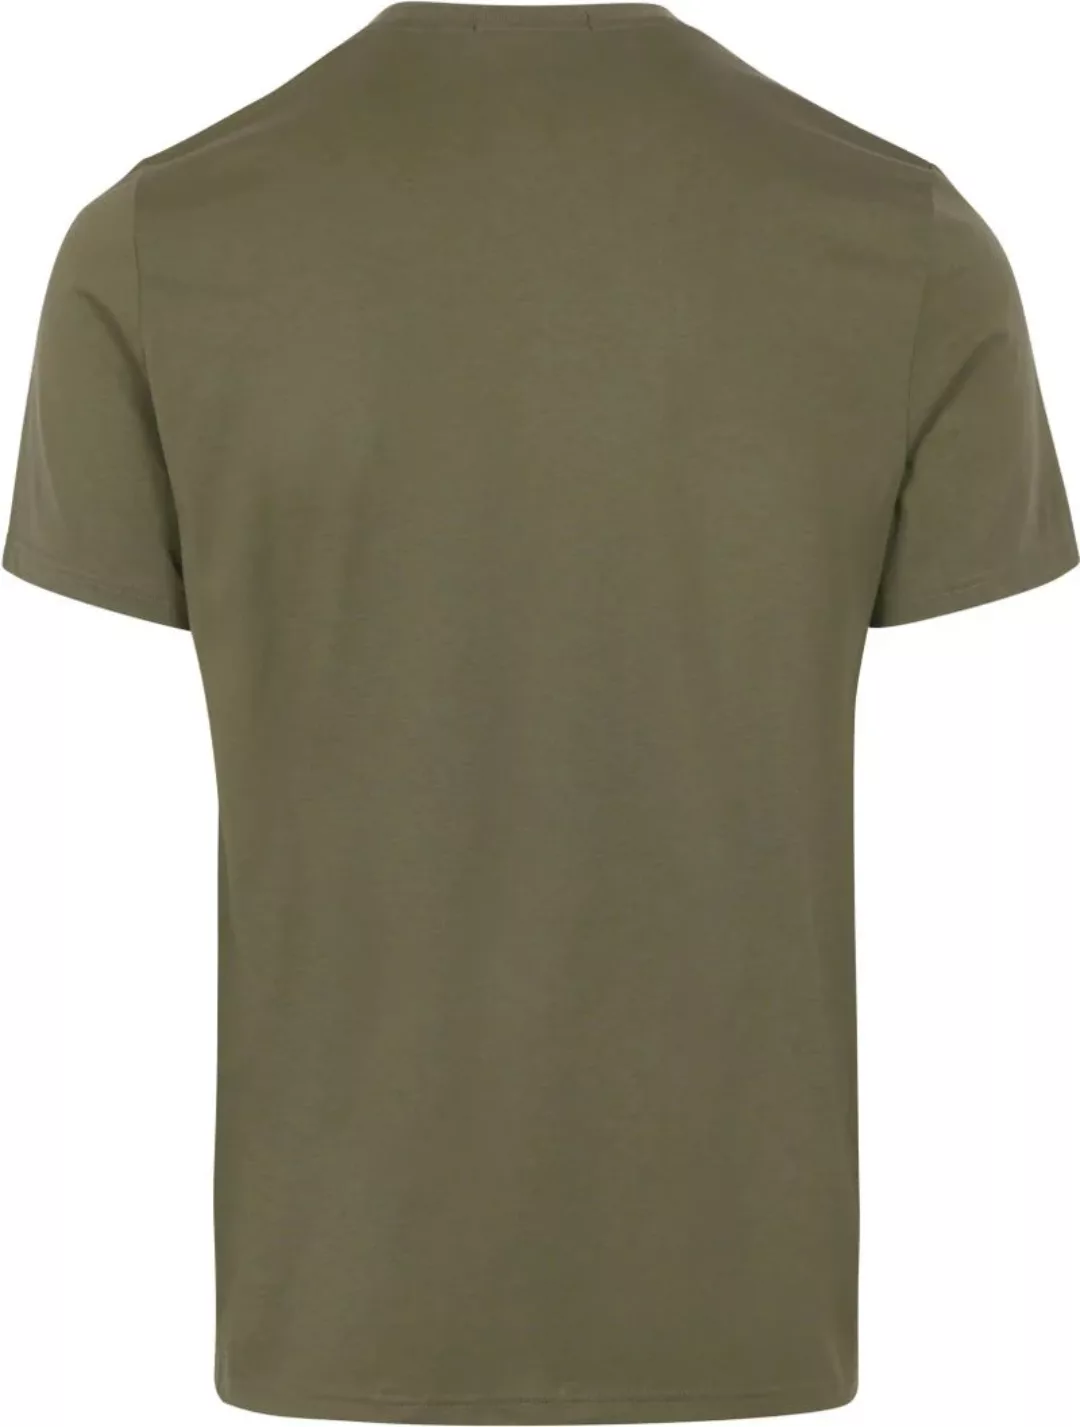 Fred Perry T-Shirt M4580 Olivgrün - Größe XL günstig online kaufen